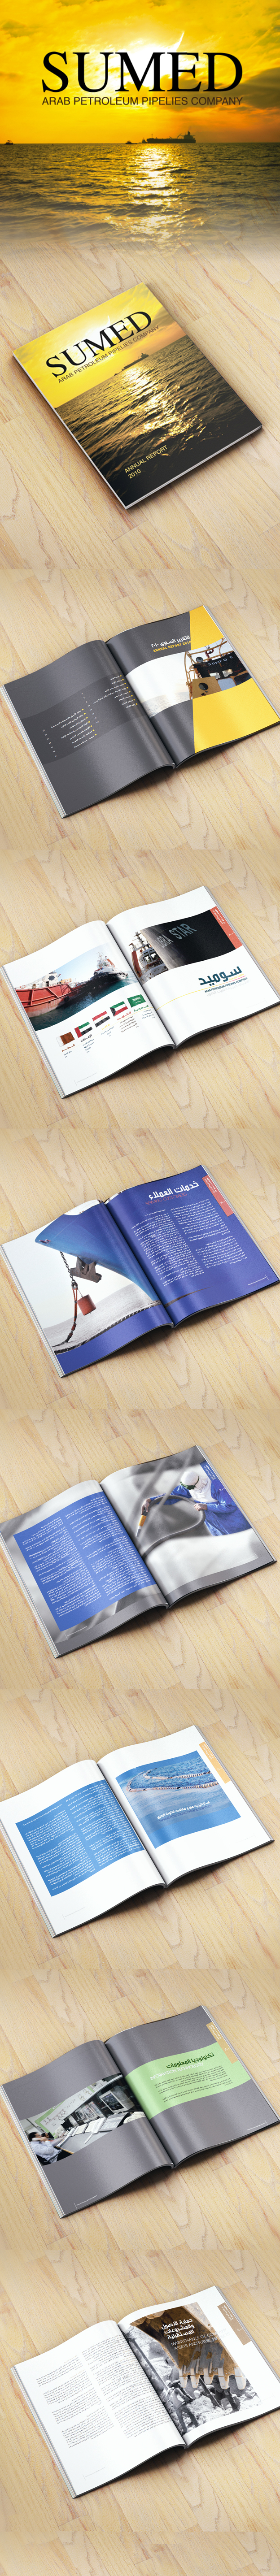 page design Magazine design annual report graphic desgin printing design